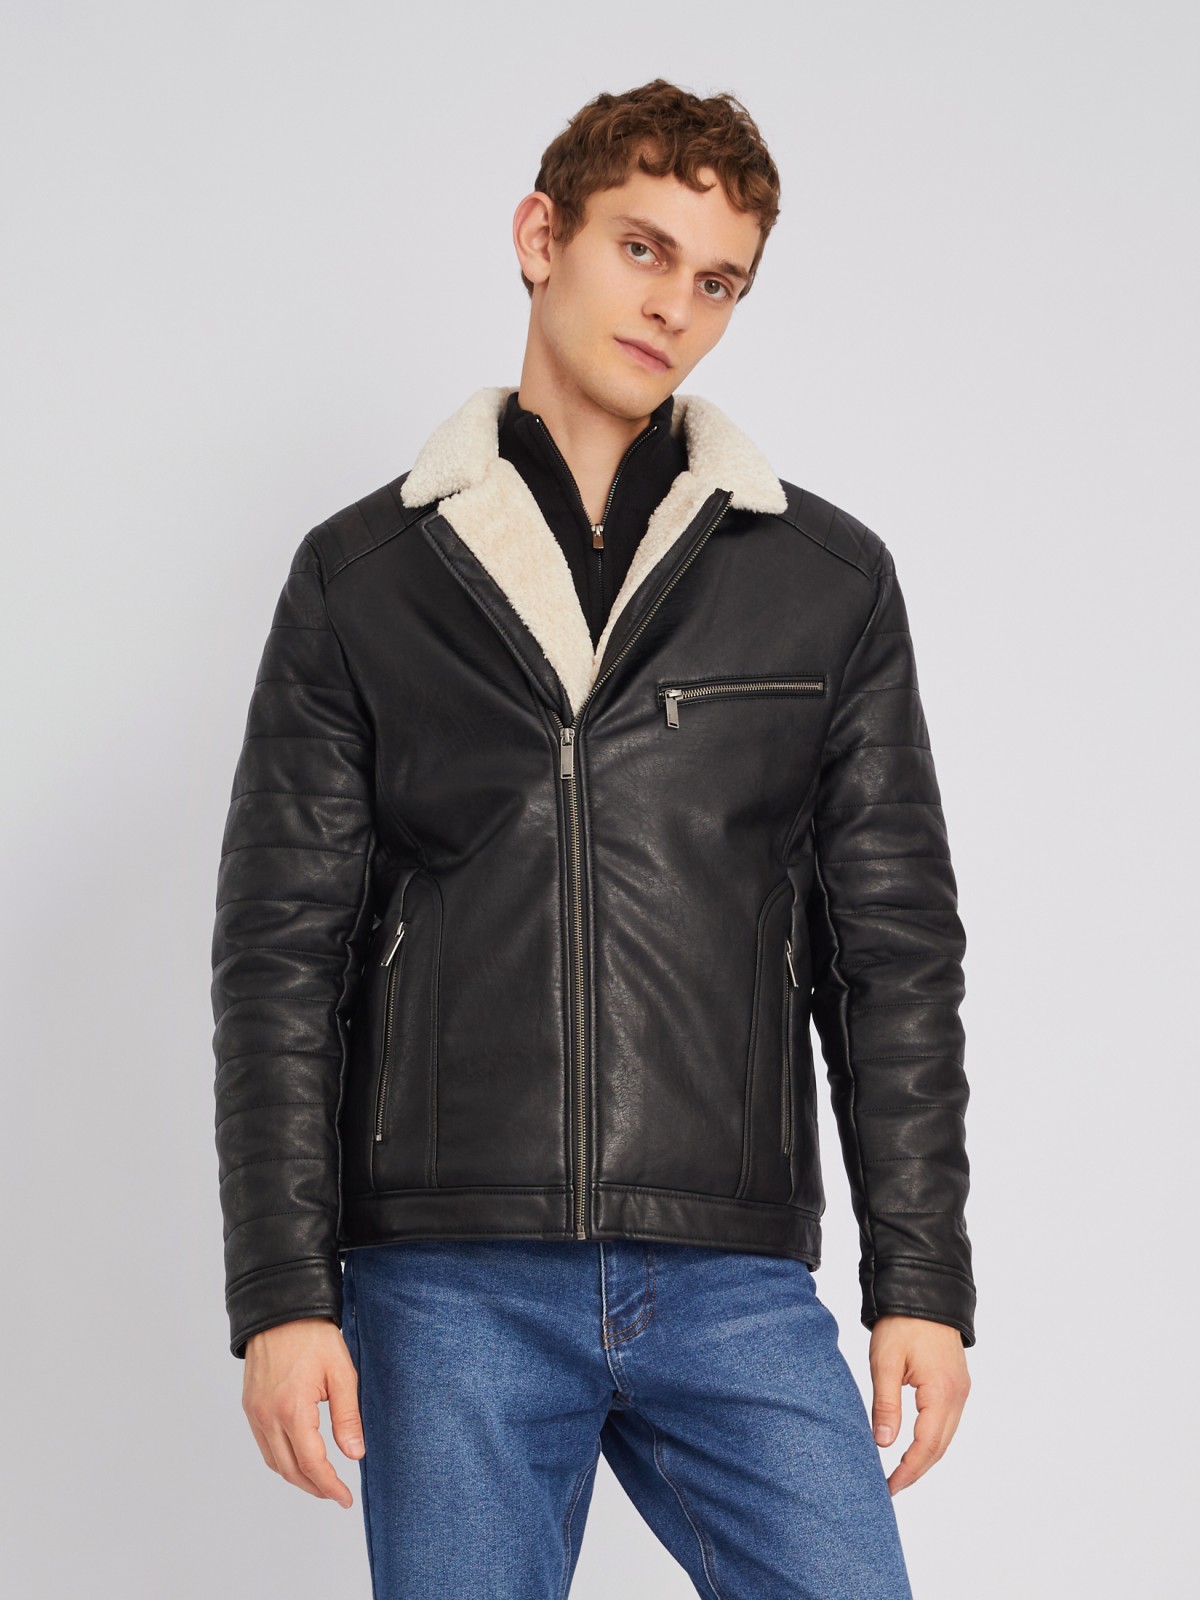 Тёплая куртка-косуха из экокожи с подкладкой из экомеха на синтепоне zolla 012345150154, цвет черный, размер L